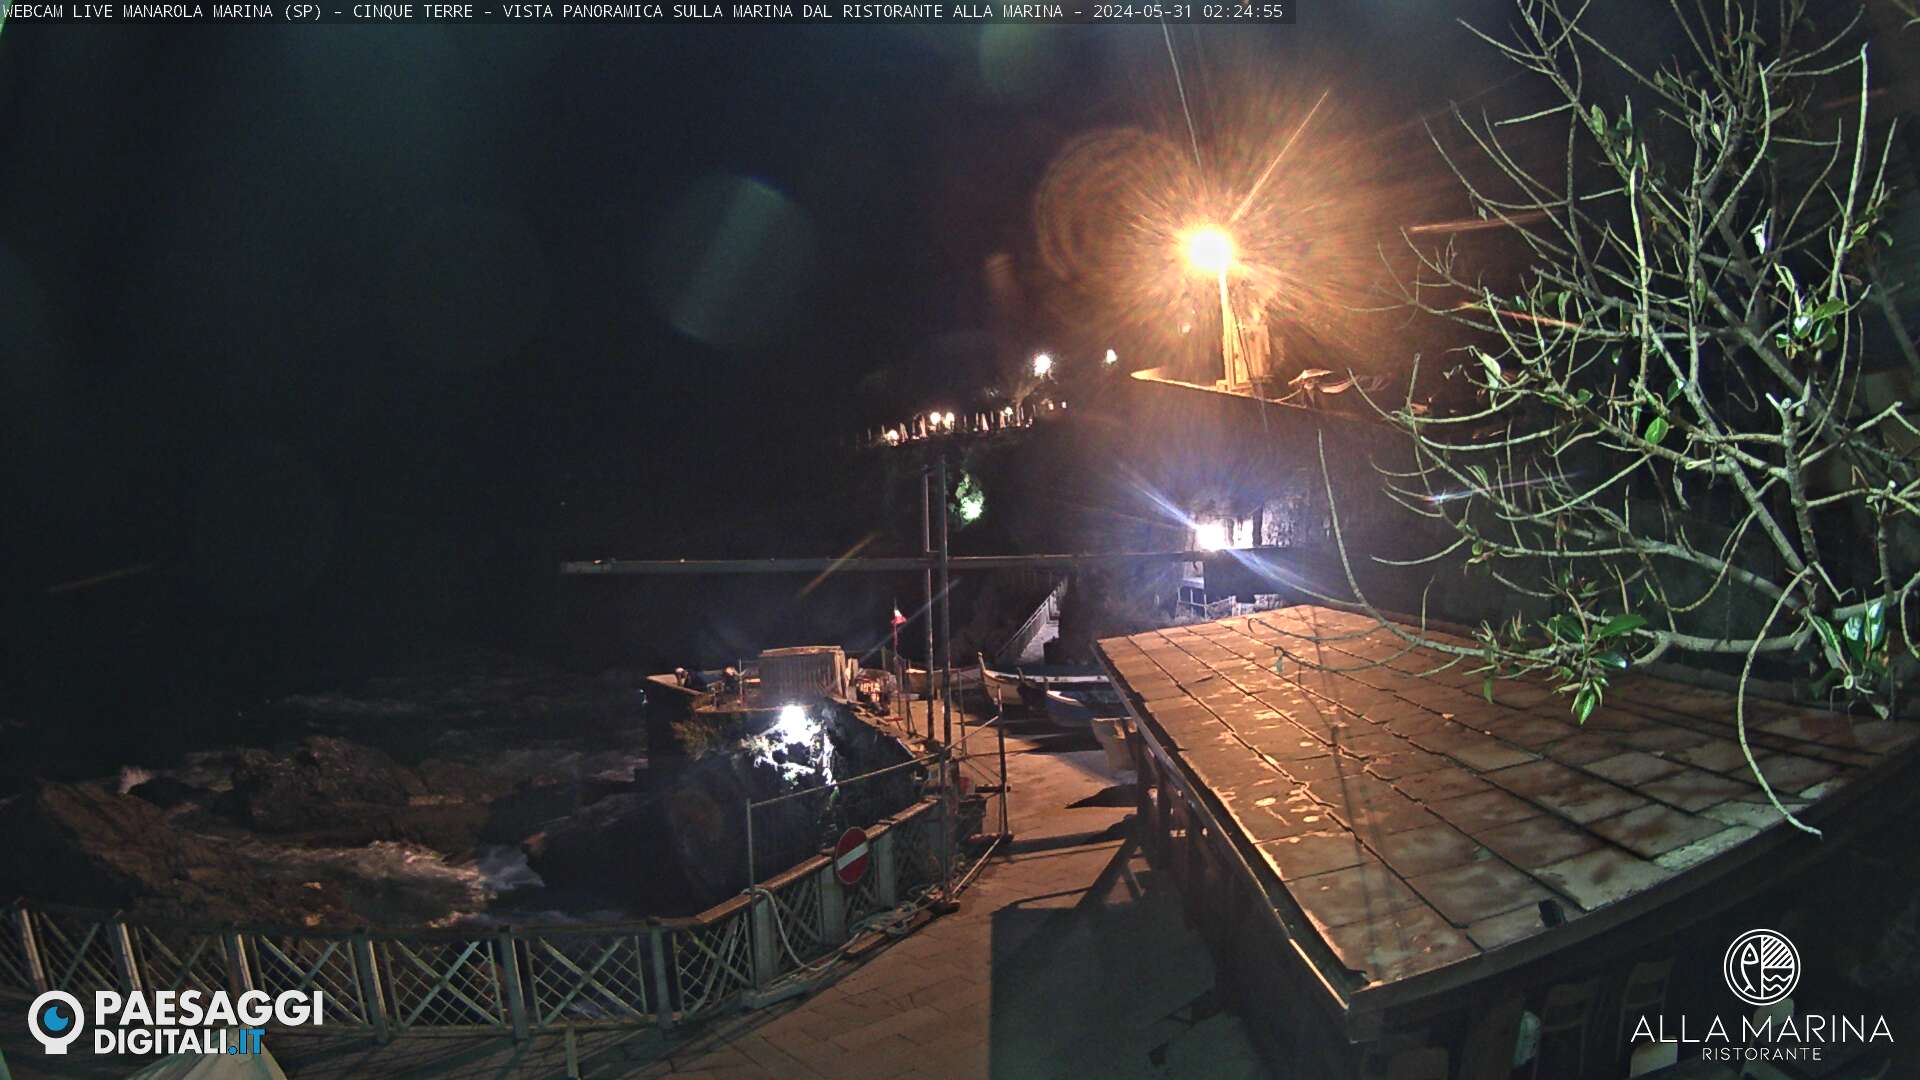 Manarola (Cinque Terre) Mar. 02:25